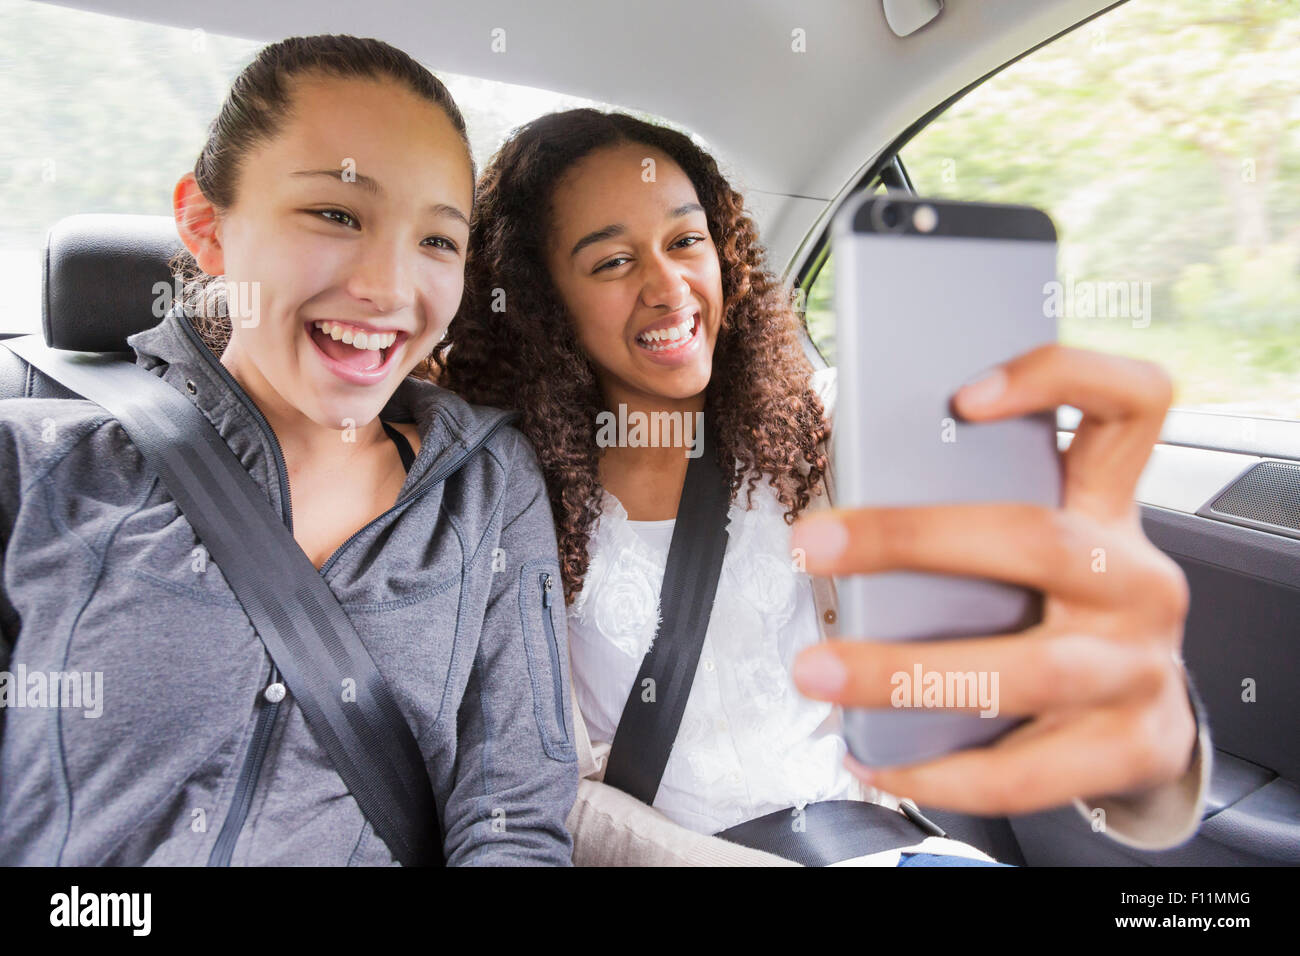 Las adolescentes con teléfono celular en el asiento de atrás de coche Foto de stock